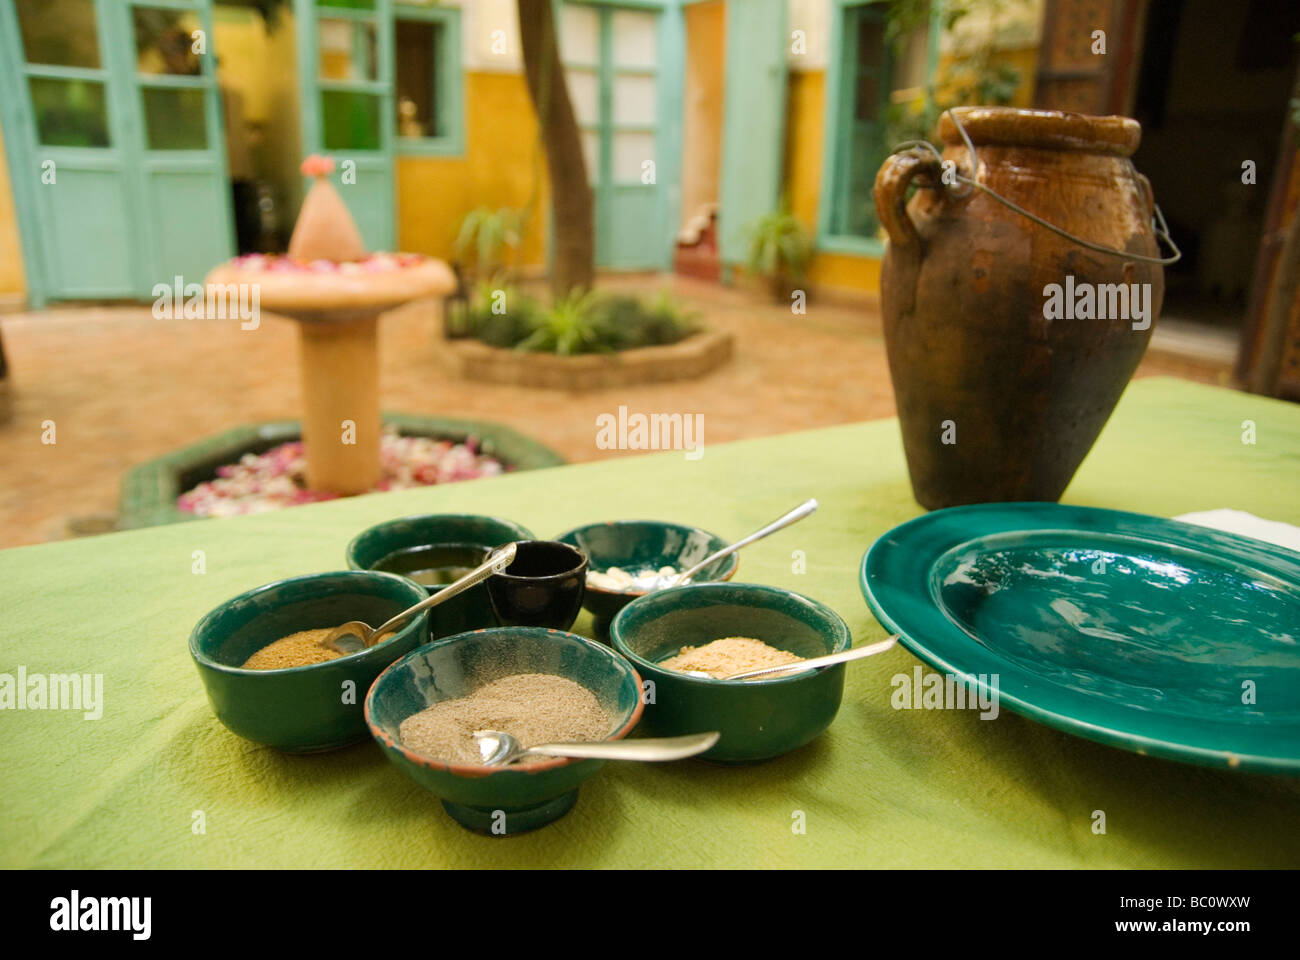 Ingrédients disposés sur une table prête pour un cours de cuisine à l'intérieur d'un Riad traditionnel ou un hôtel à Marrakech Maroc Banque D'Images